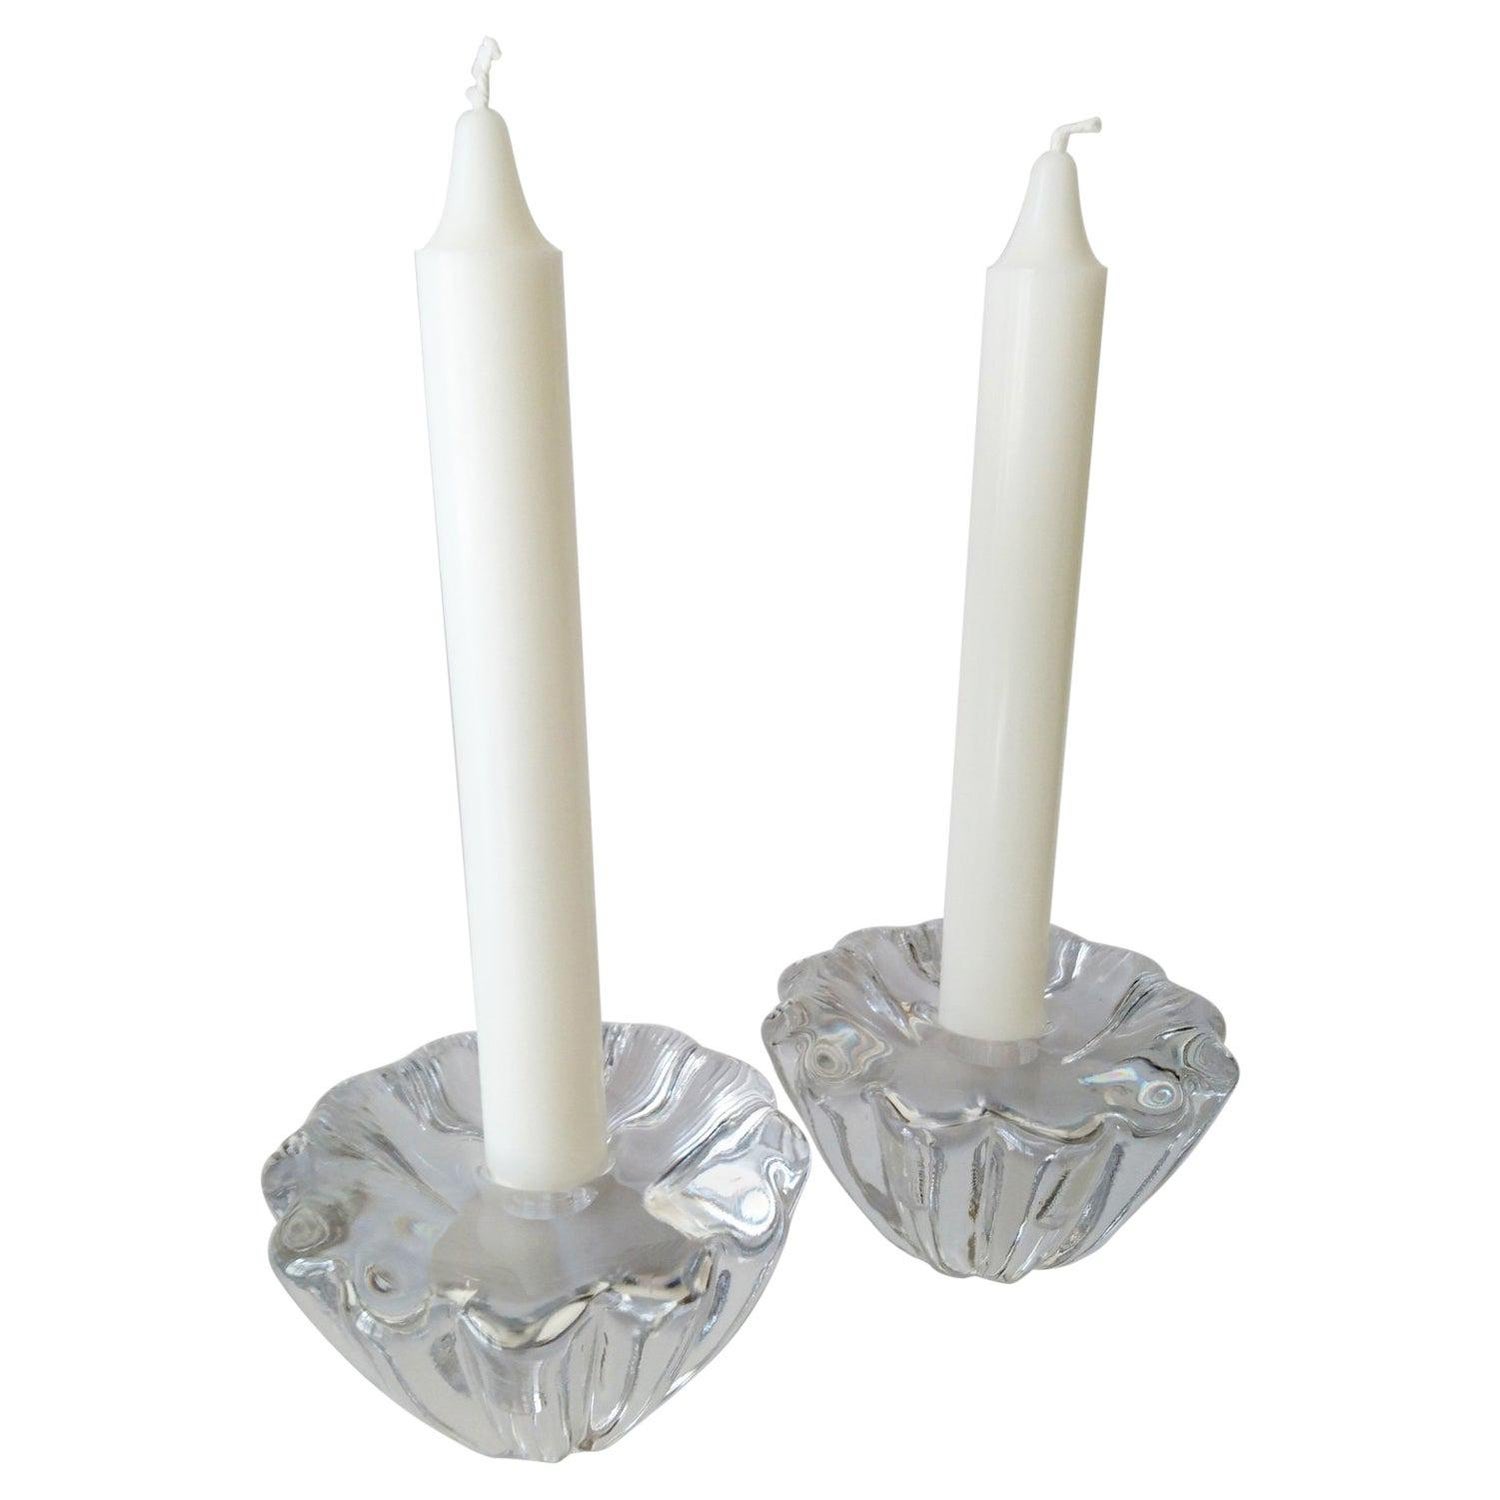 Orrefors Sweden Candlestick Holders - For Sale on 1stDibs | orrefors  crystal candlesticks, orrefors sweden votive candle holder, orrefors  crystal candle holders